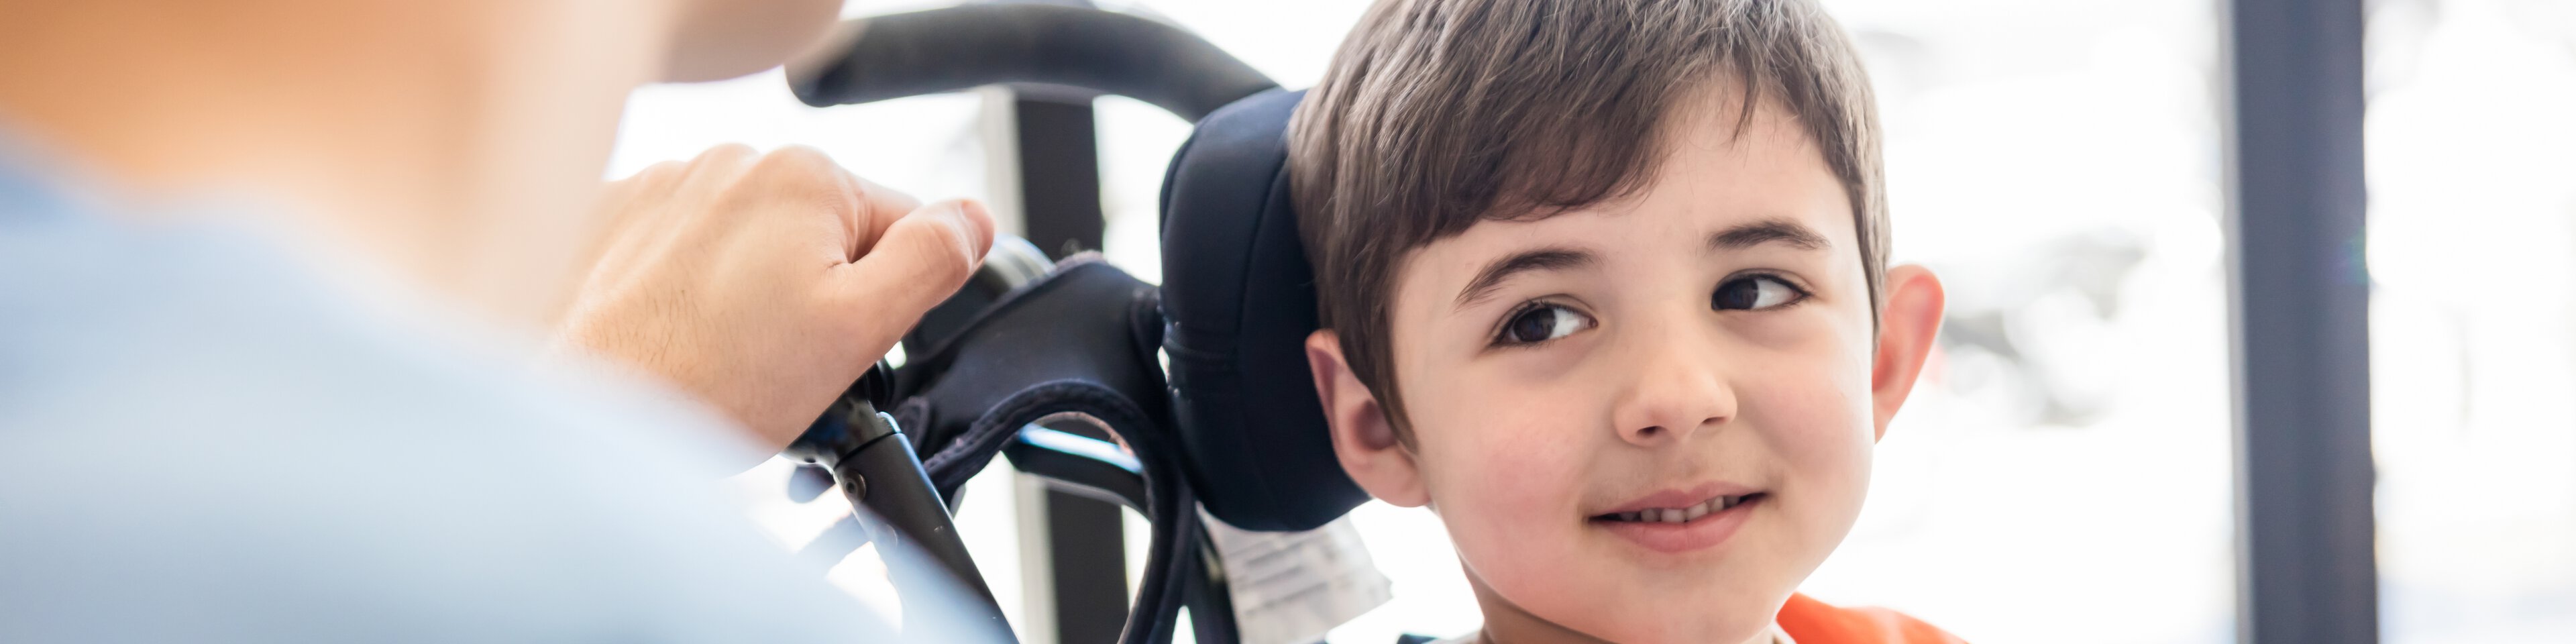 Ein Junge im Rollstuhl lacht in Richtung der Betreuerin | © Hispanolistic - Getty Images